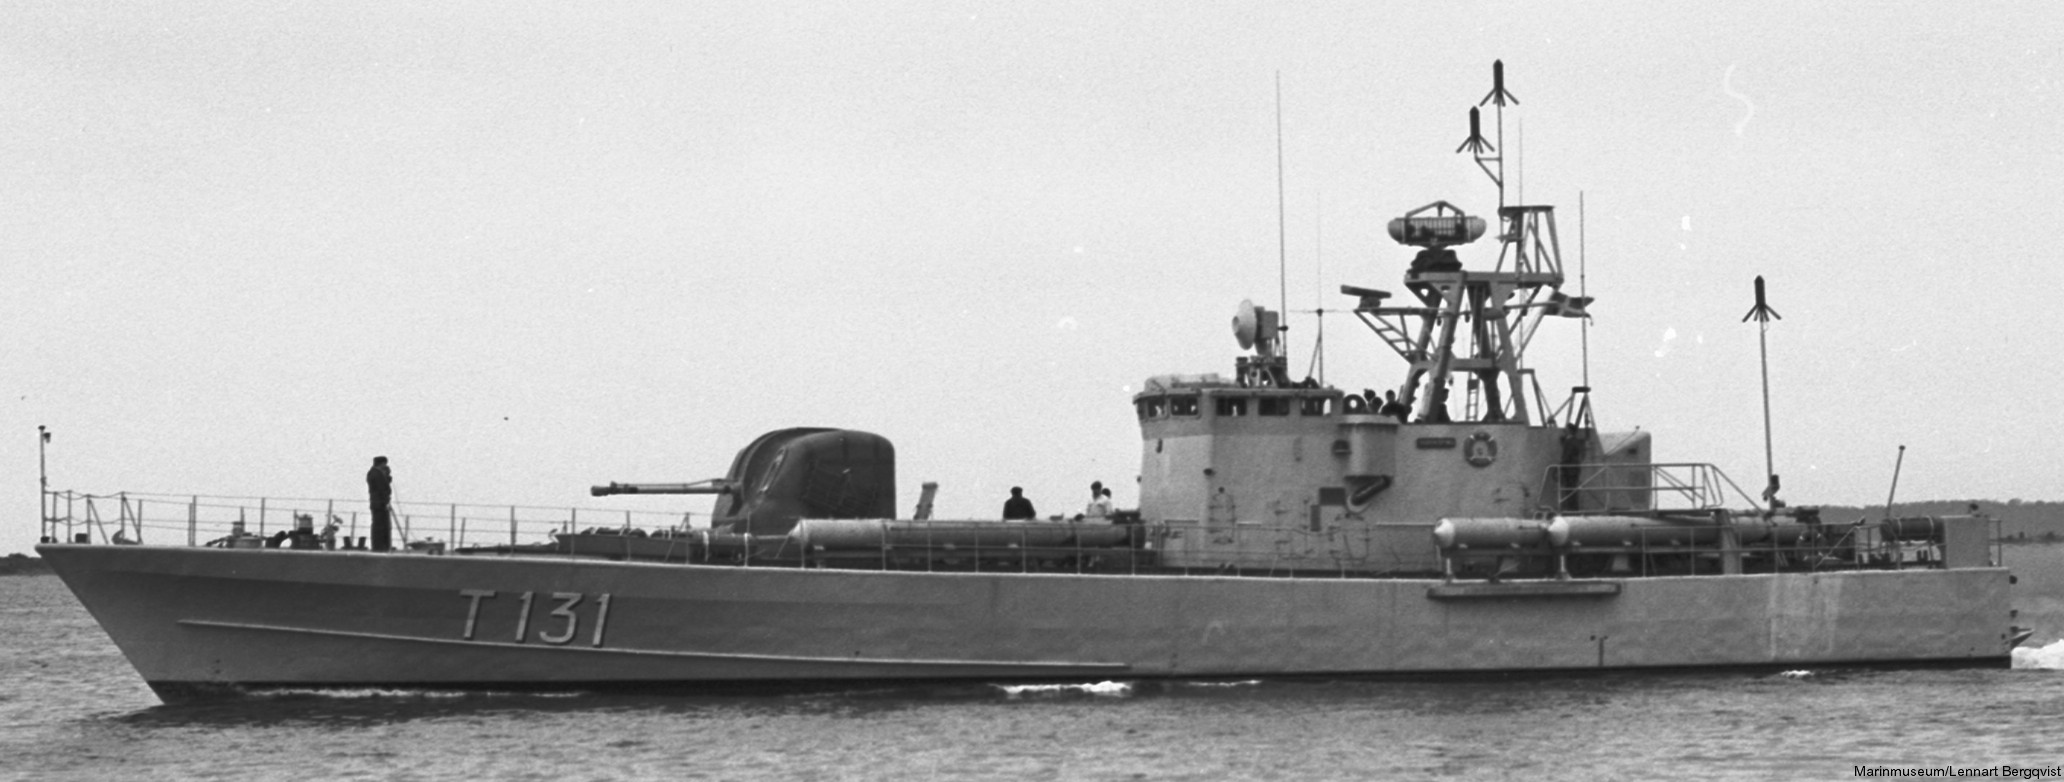 t131 norrköping hswms hms class fast attack craft torpedo patrol boat swedish navy svenska marinen 03